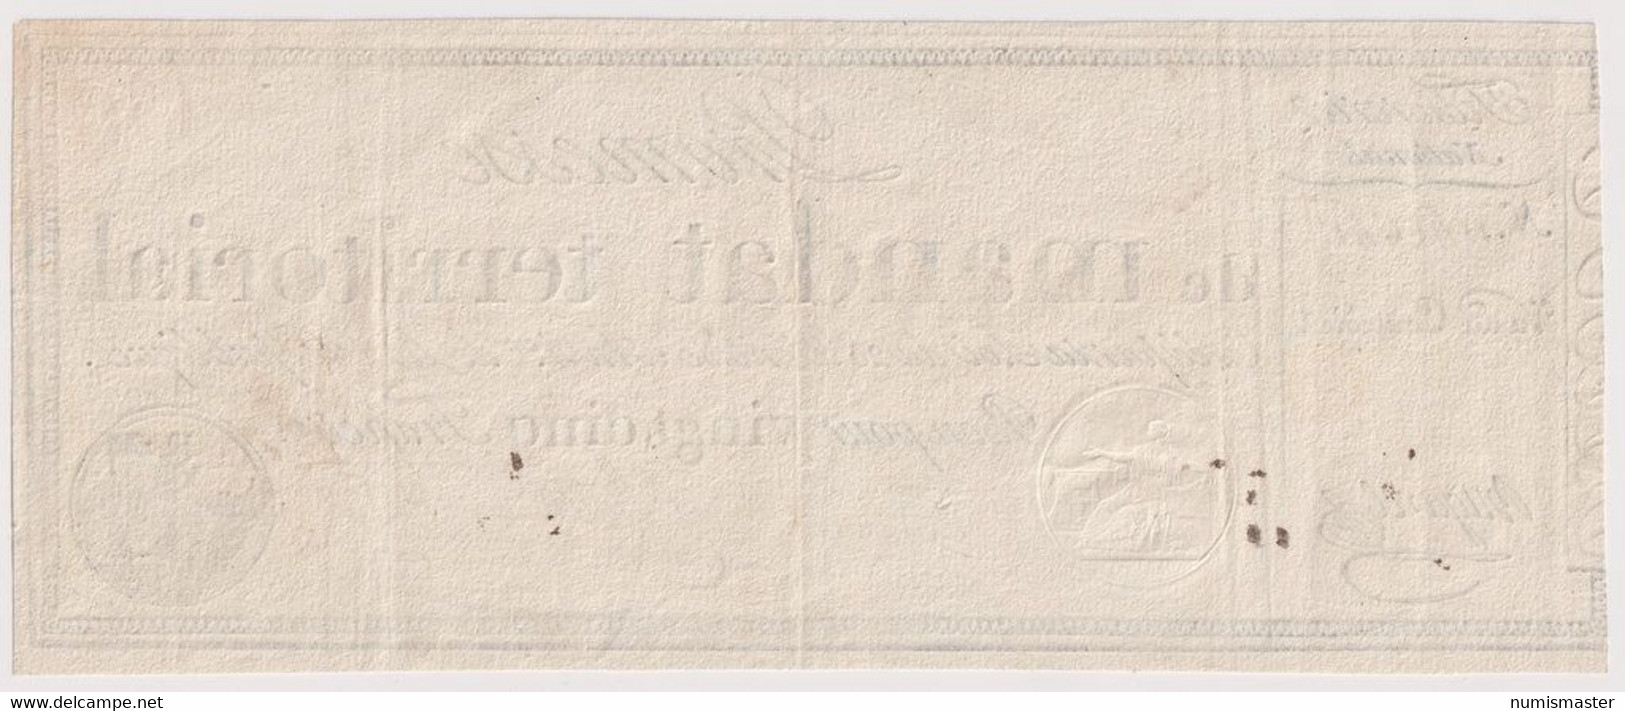 FRANCE PROMESE DE MANDAT TERITORIAL 25 FRANCS 1796 - ...-1889 Anciens Francs Circulés Au XIXème